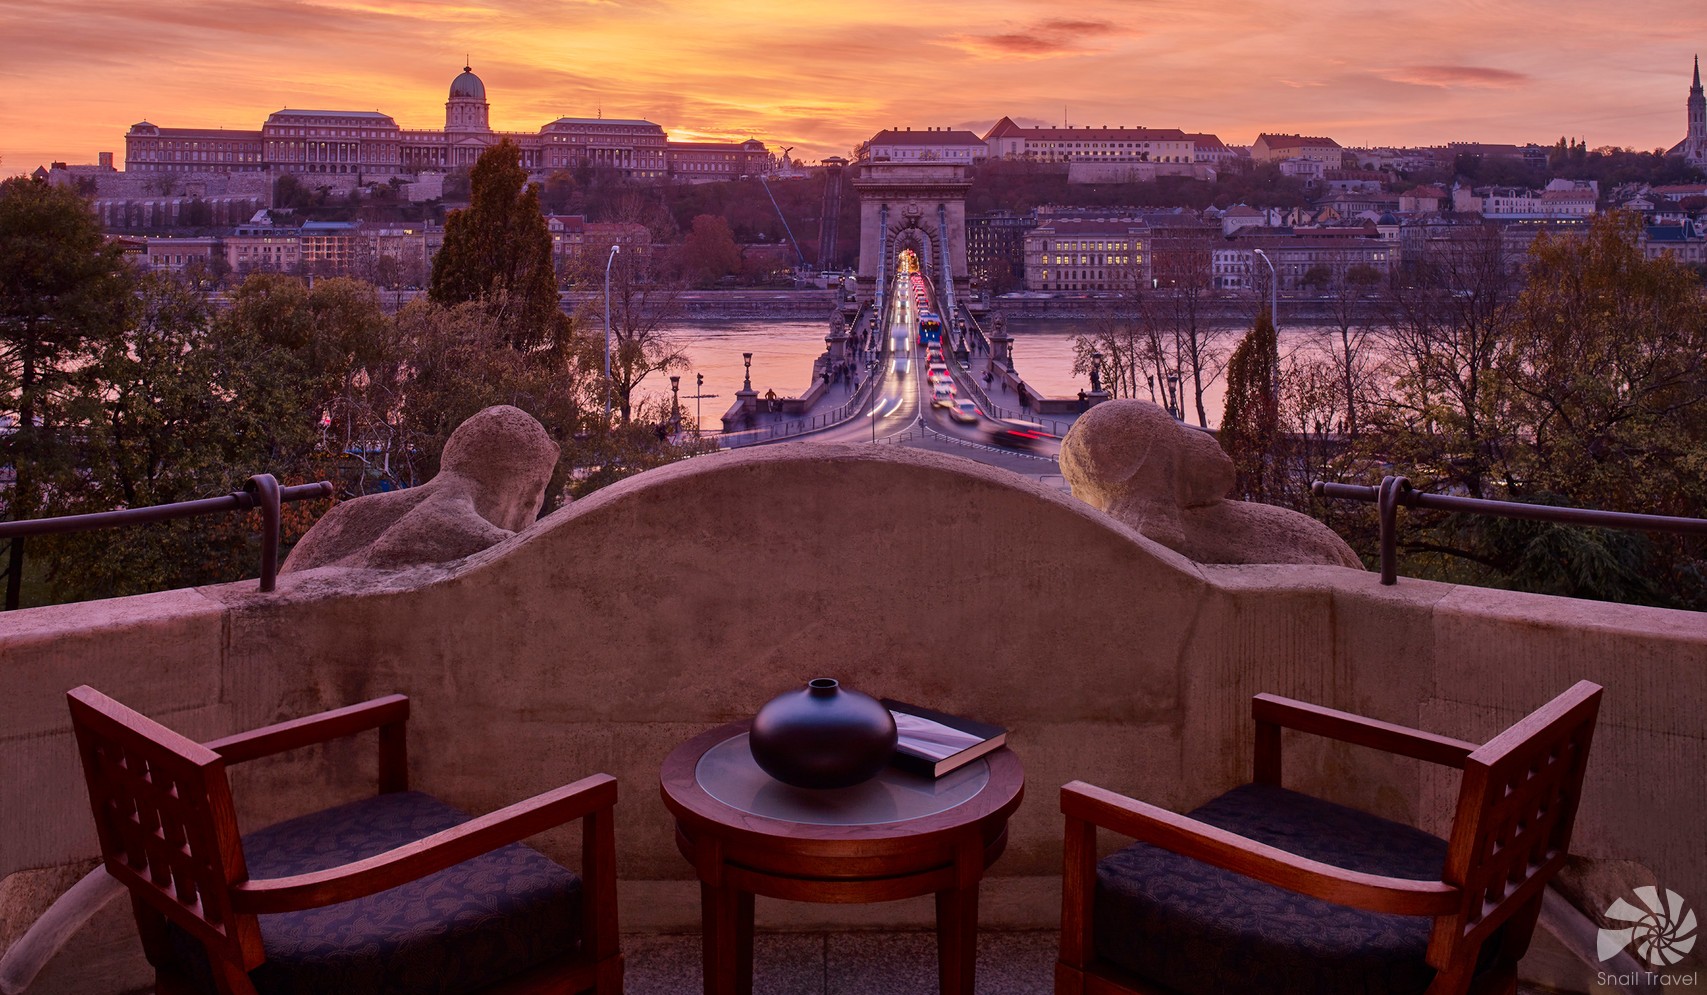 FOUR SEASONS HOTEL GRESHAM PALACE BUDAPEST *****